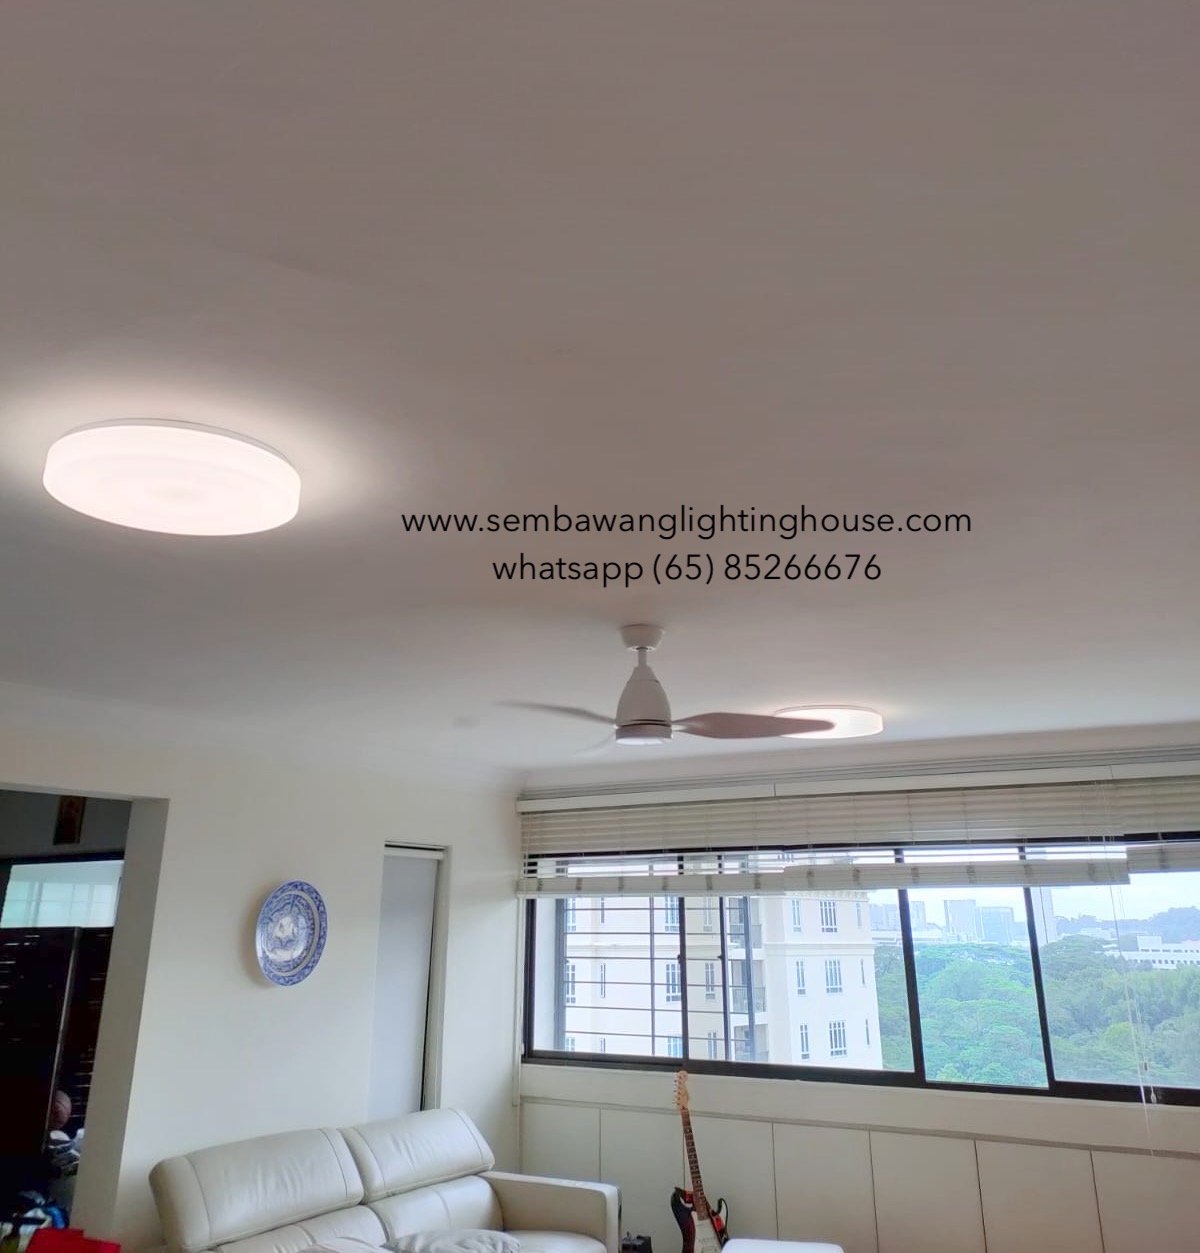 acorn-dc325-46-inch-white-ceiling-fan-with-light-sembawang-lighting-house-06.jpg